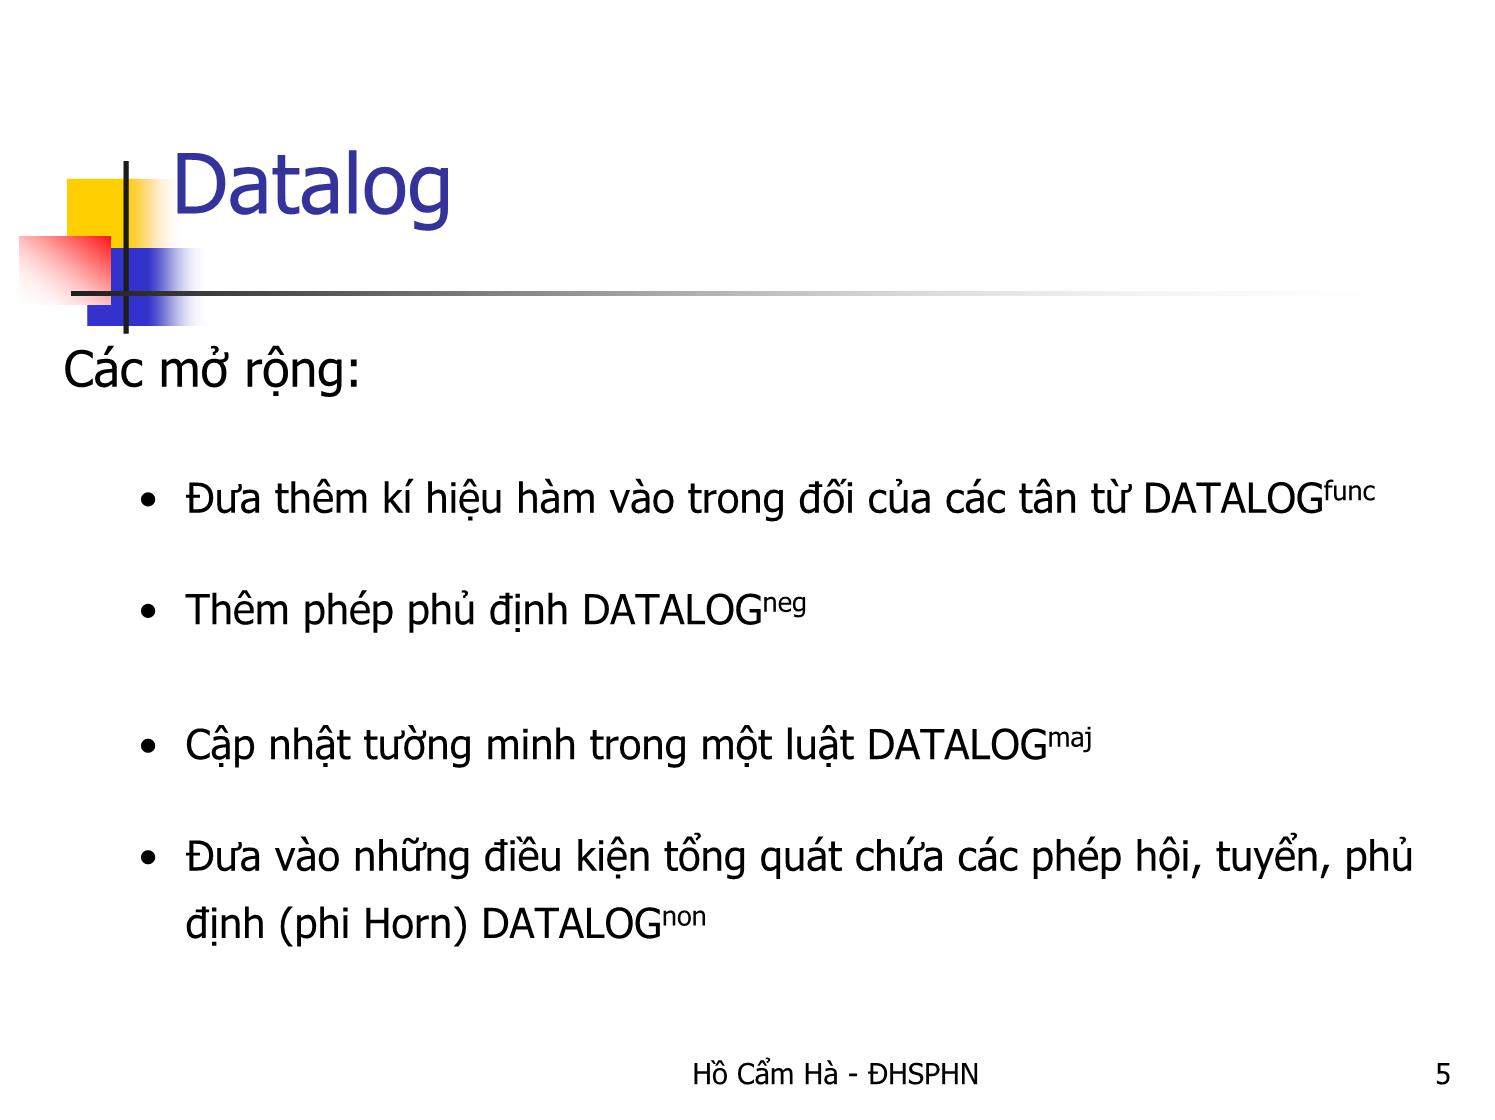 Bài giảng Datalog-Ngôn ngữ luật cho các cơ sở dữ liệu trang 5